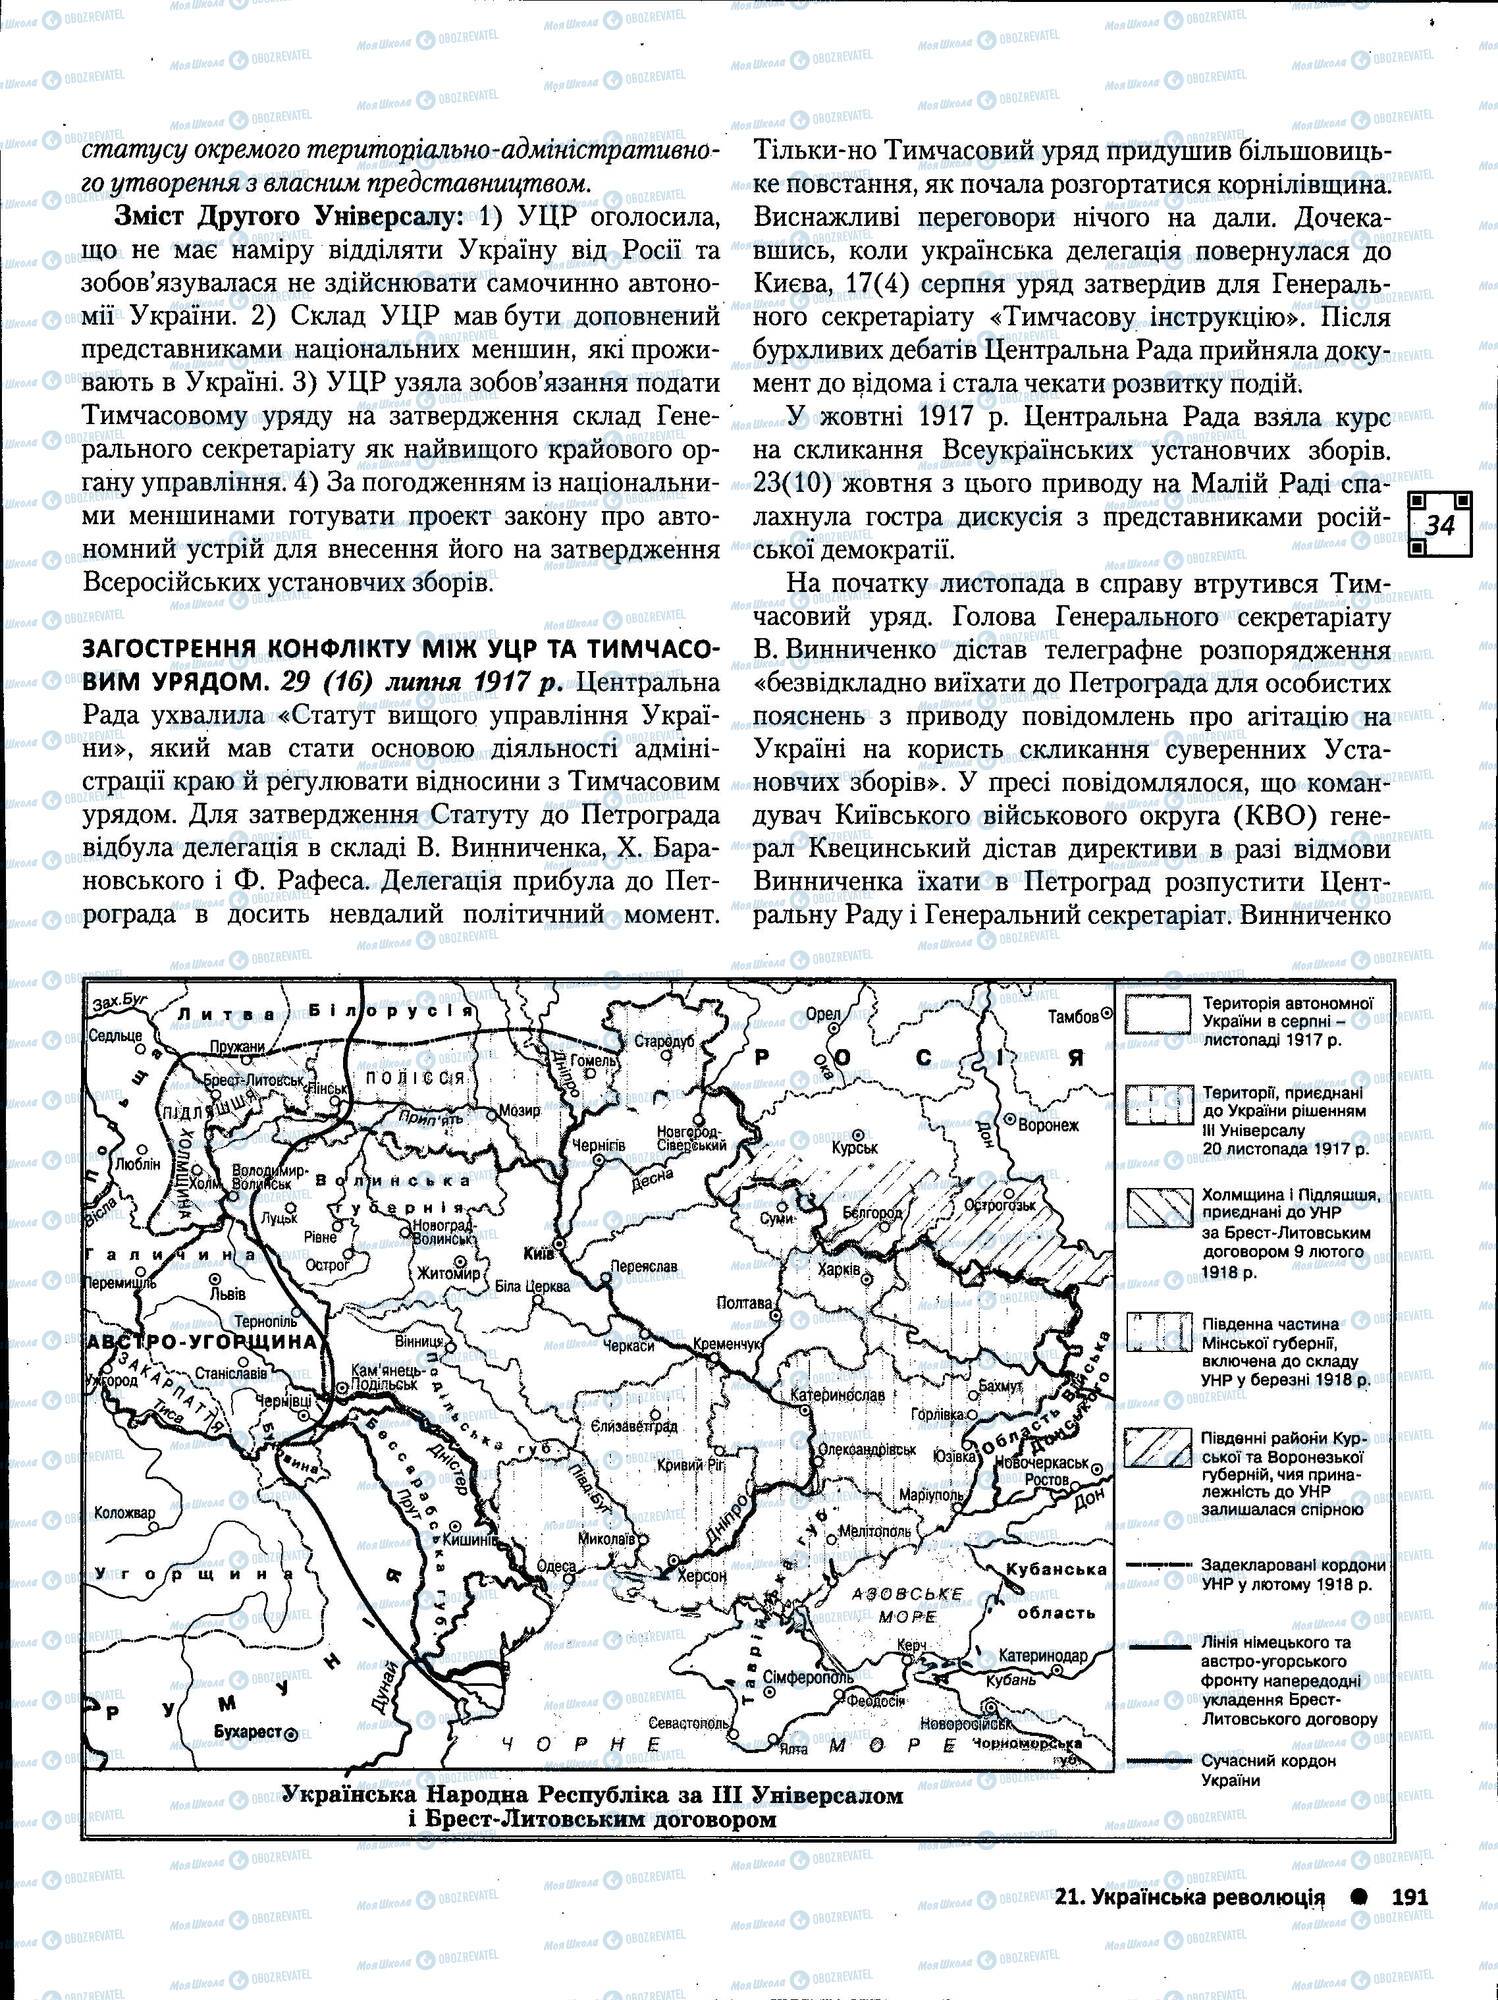 ЗНО История Украины 11 класс страница 191